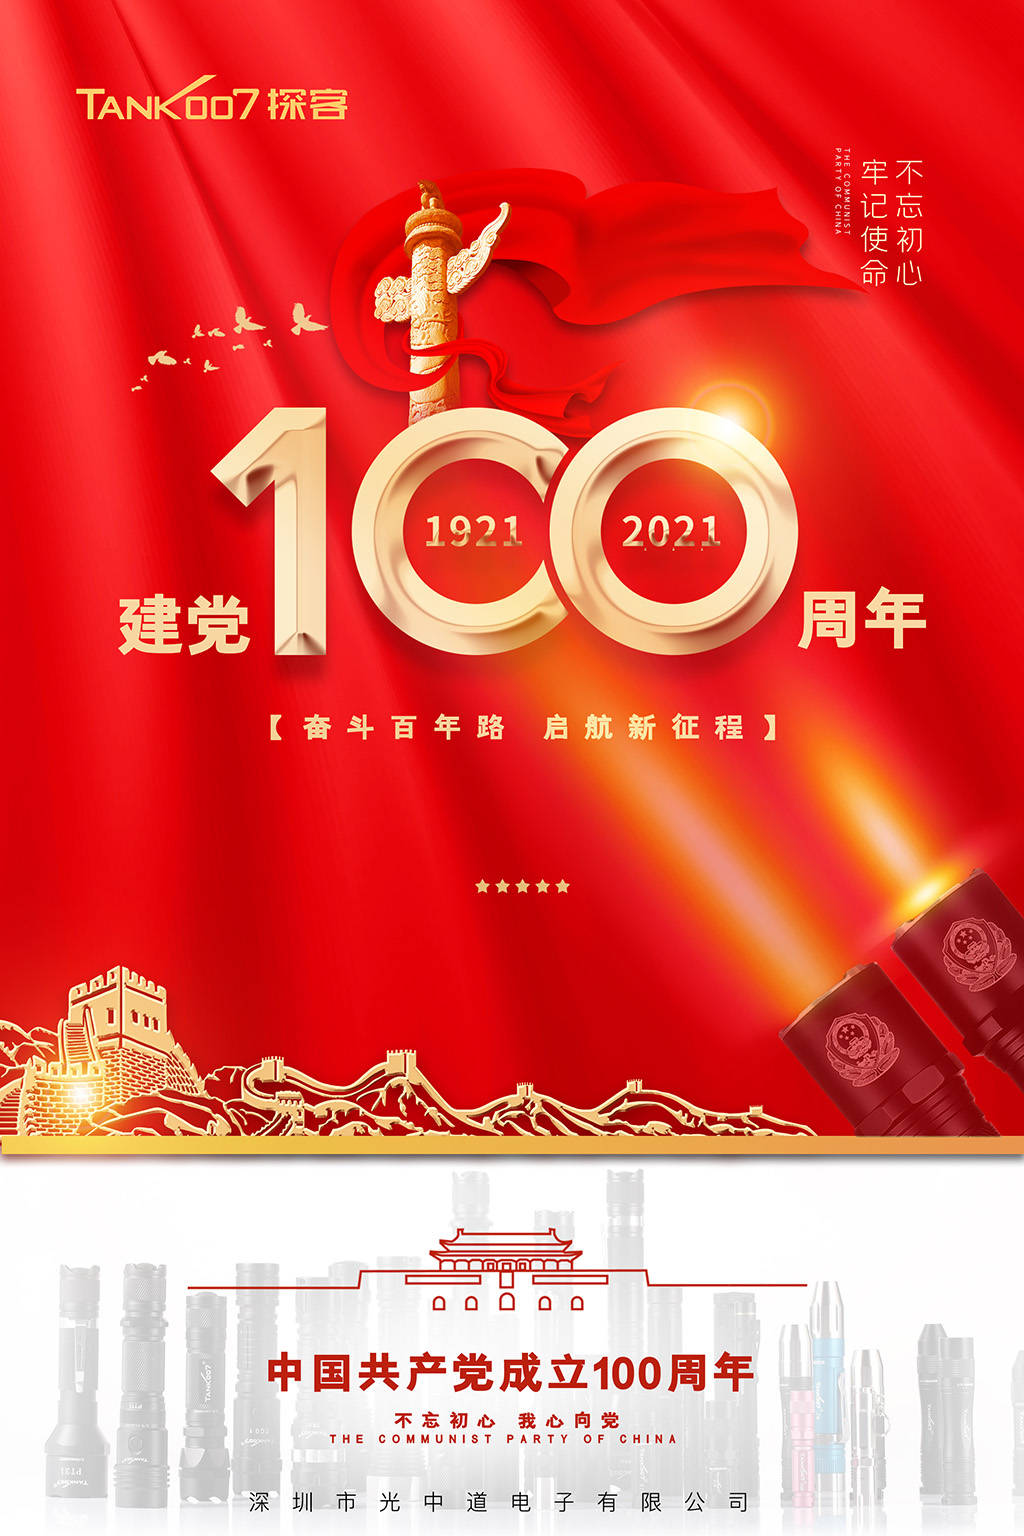 tank007探客庆祝中国共产党建党100周年